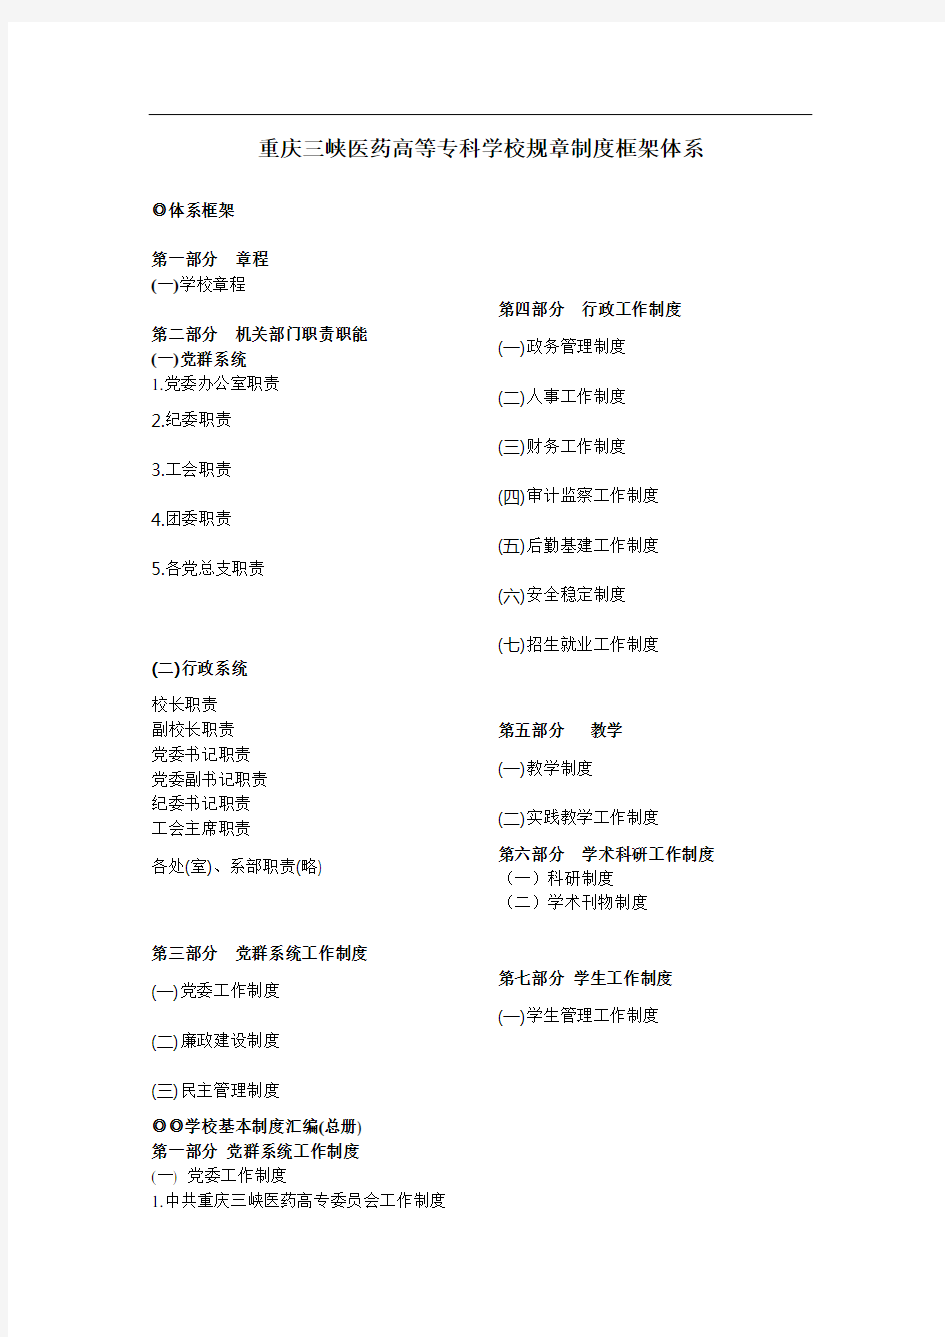 重庆三峡医药高等专科学校规章制度框架体系